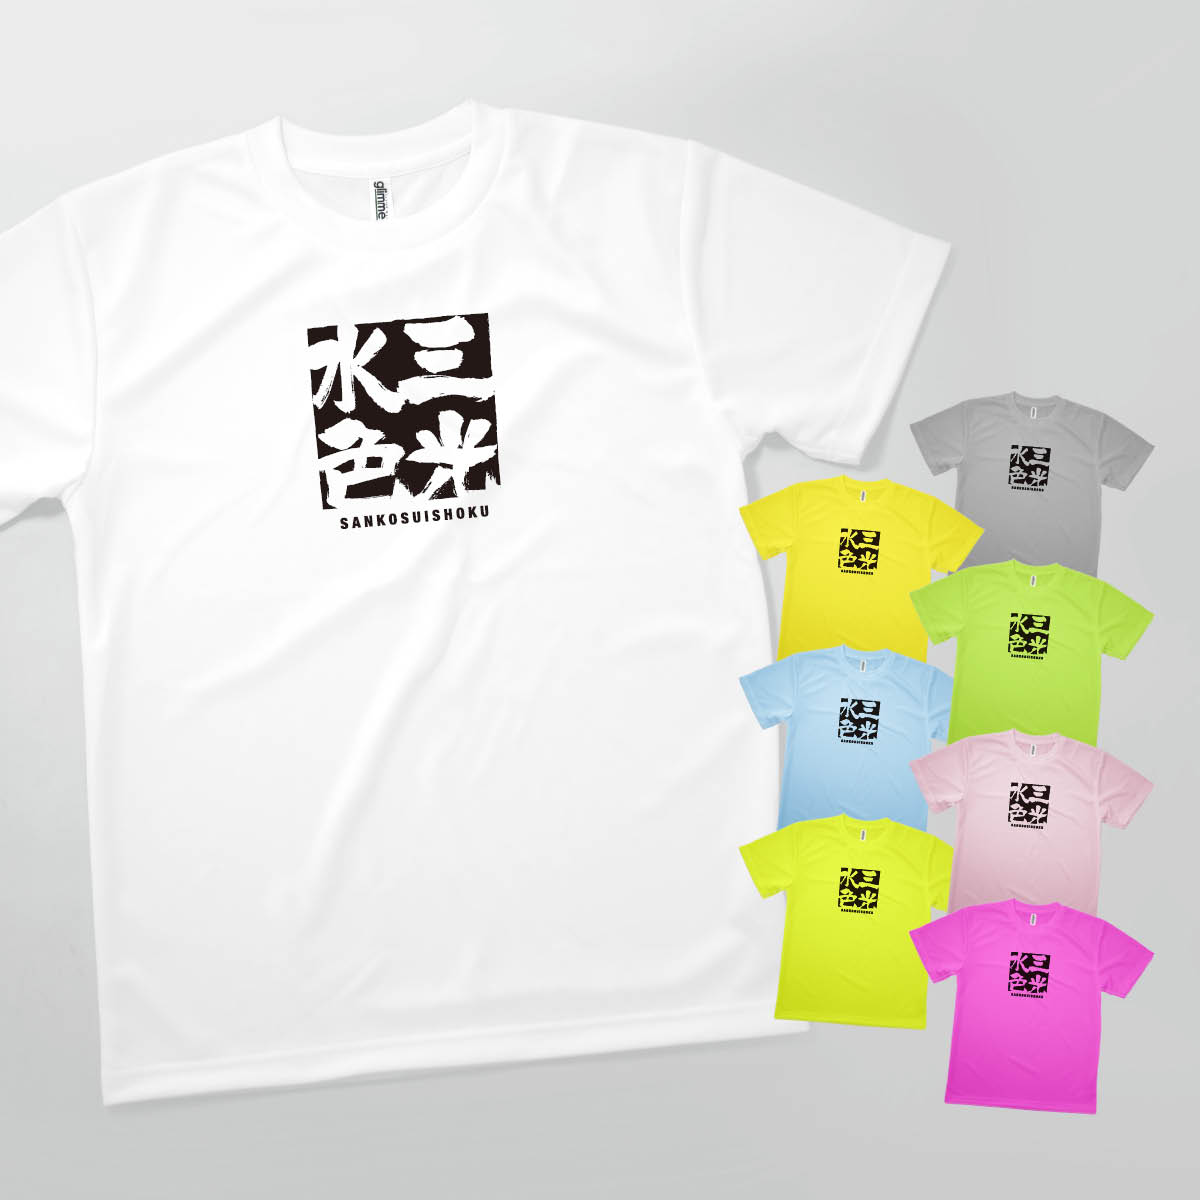 Tシャツ 三光水色 さんこうすいしょく SANKOSUISHOKU 発汗性の良い快適素材 ドライTシャツ